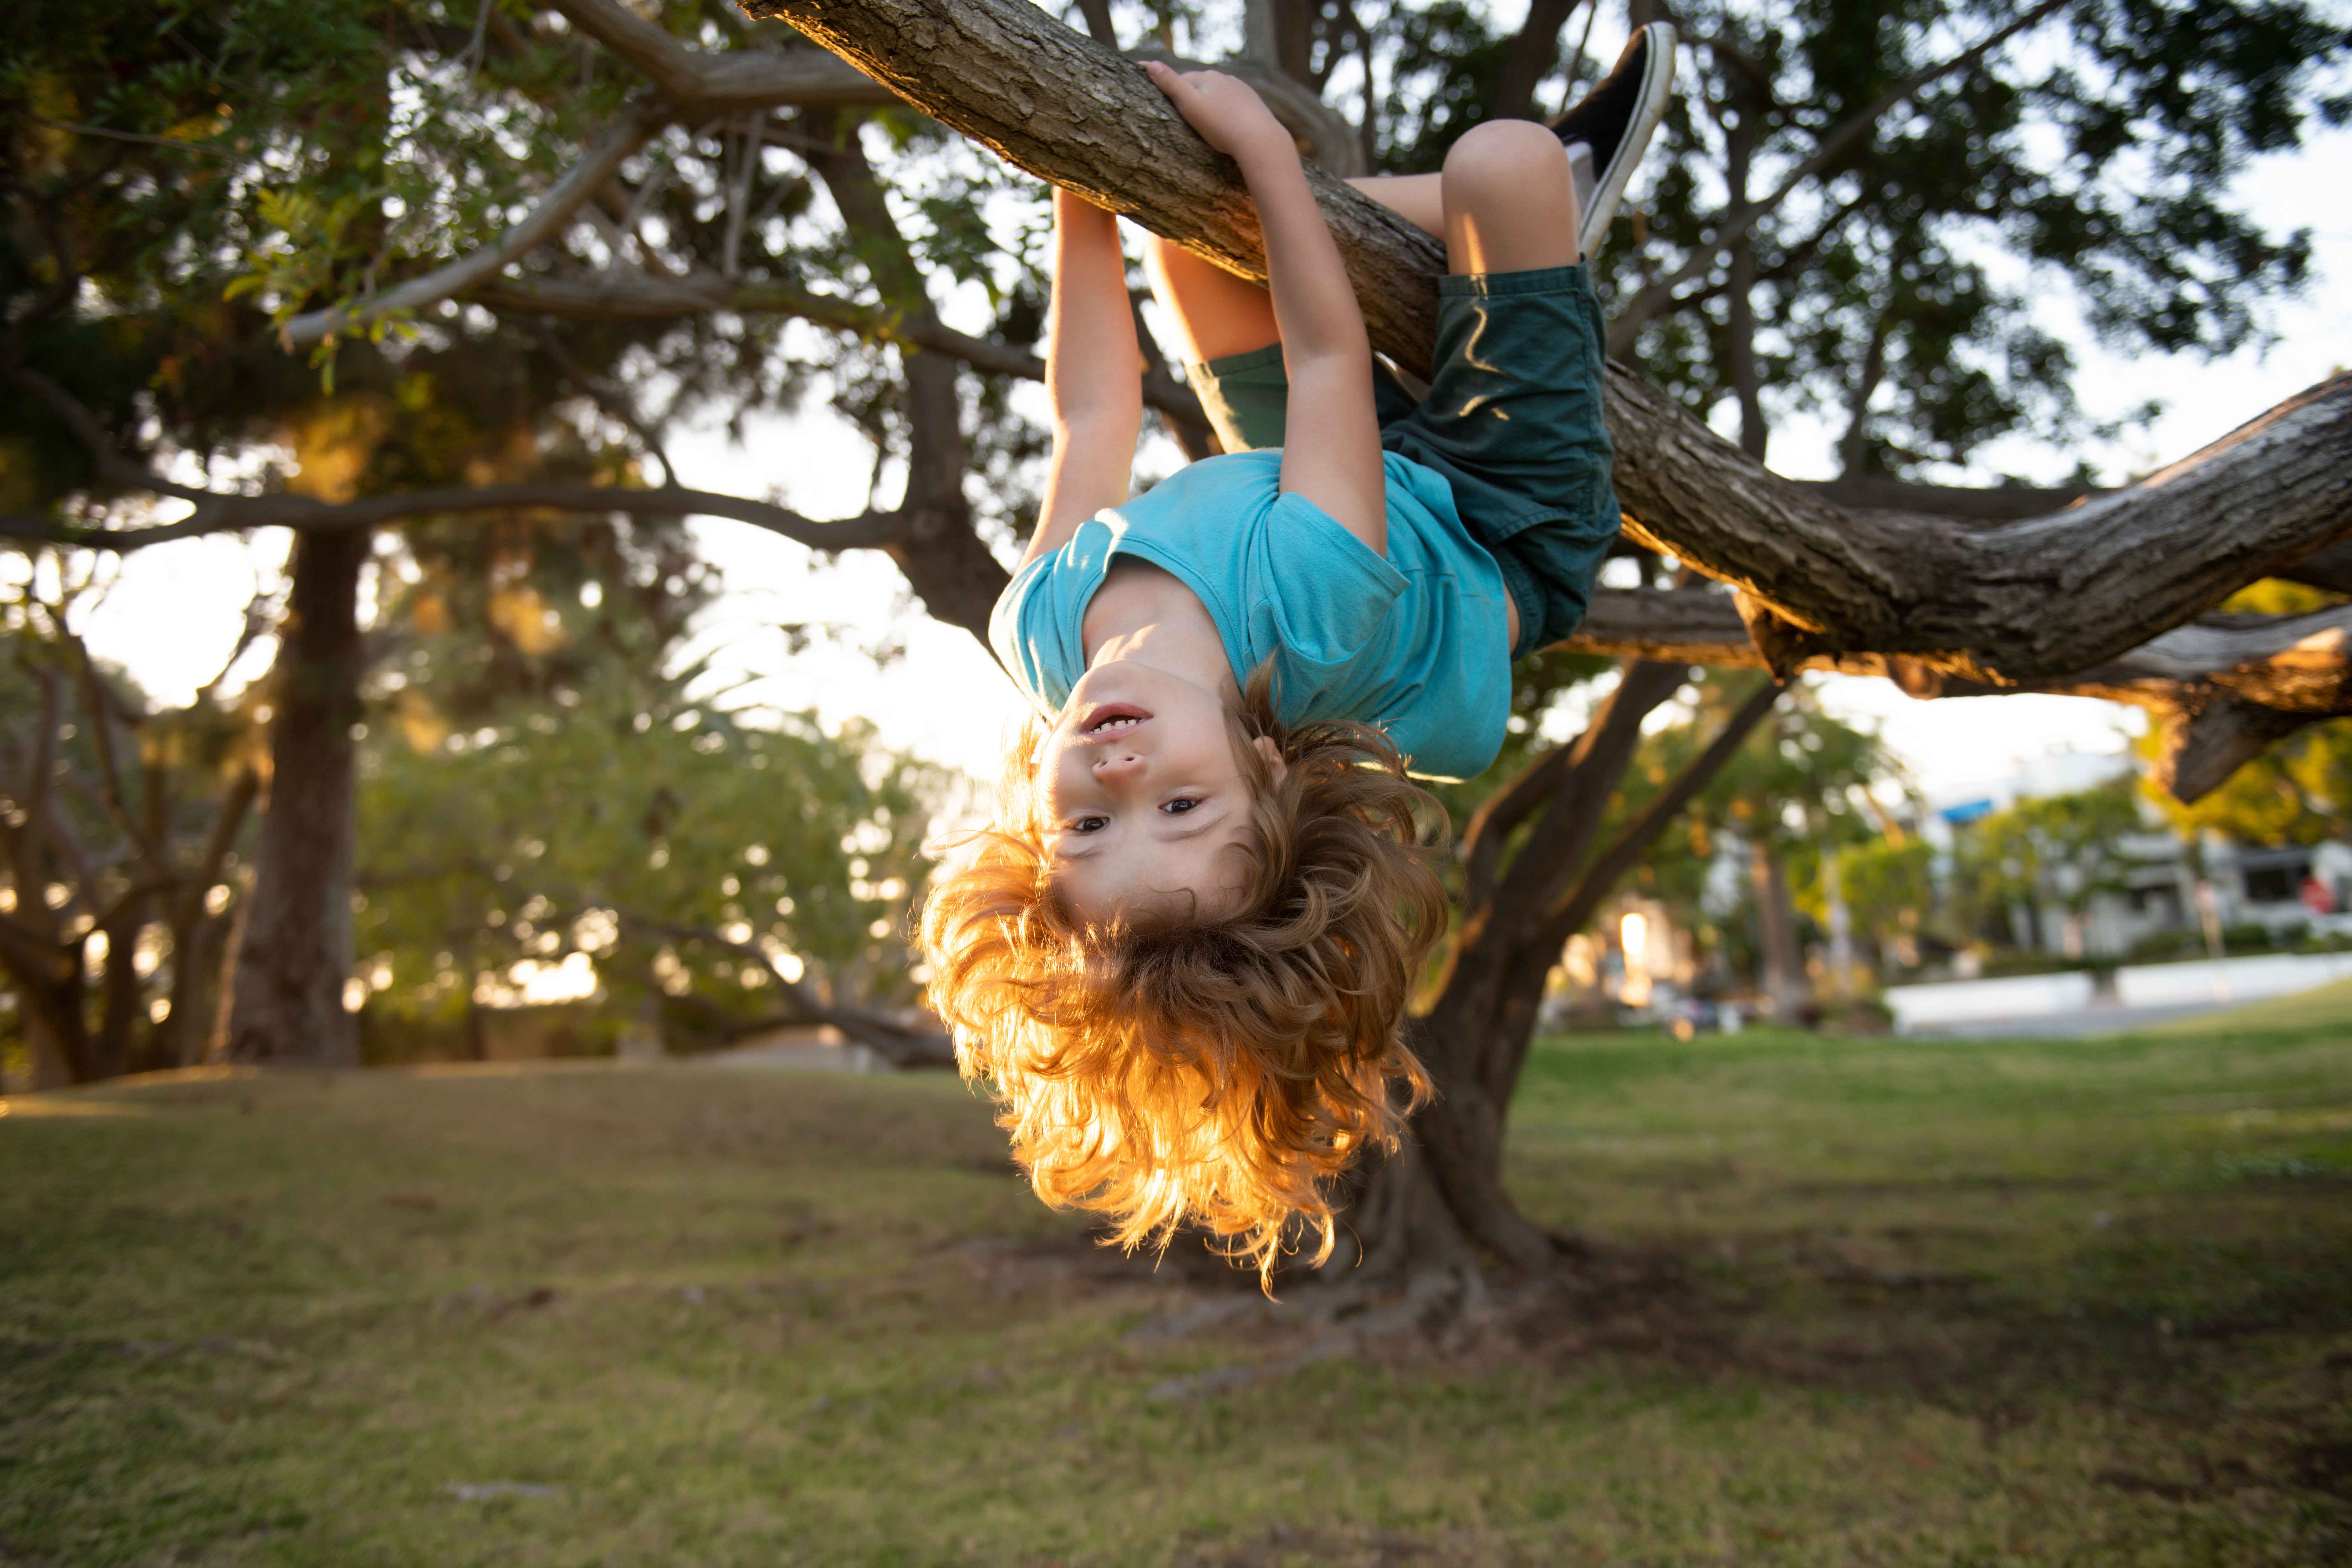 A kid hangs upside down on a tree